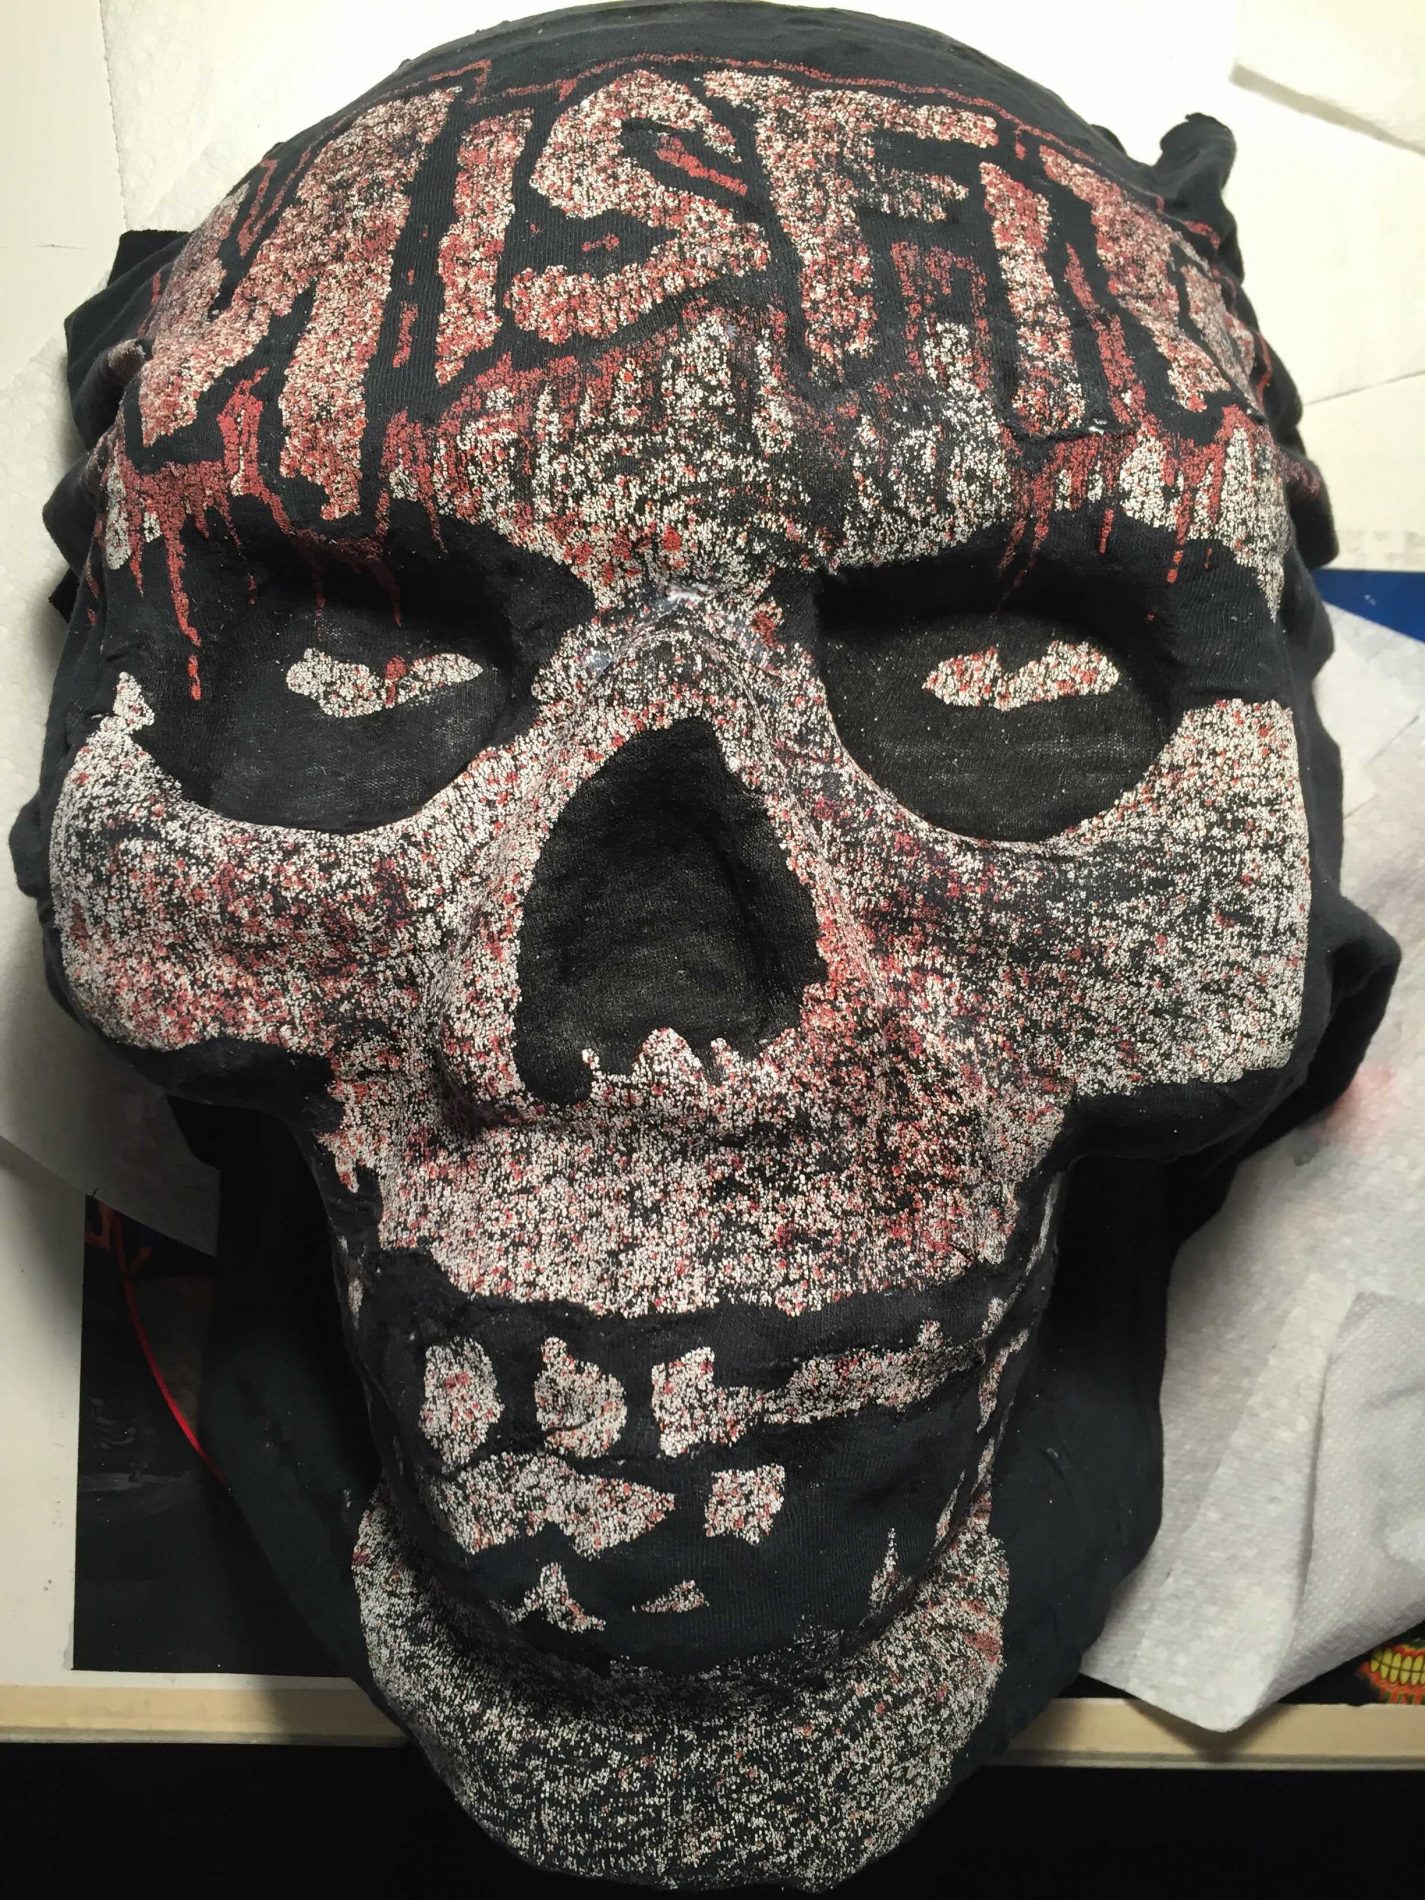 Horror Cornucopia - Misfits shirt transformation into a 3D skull - 02